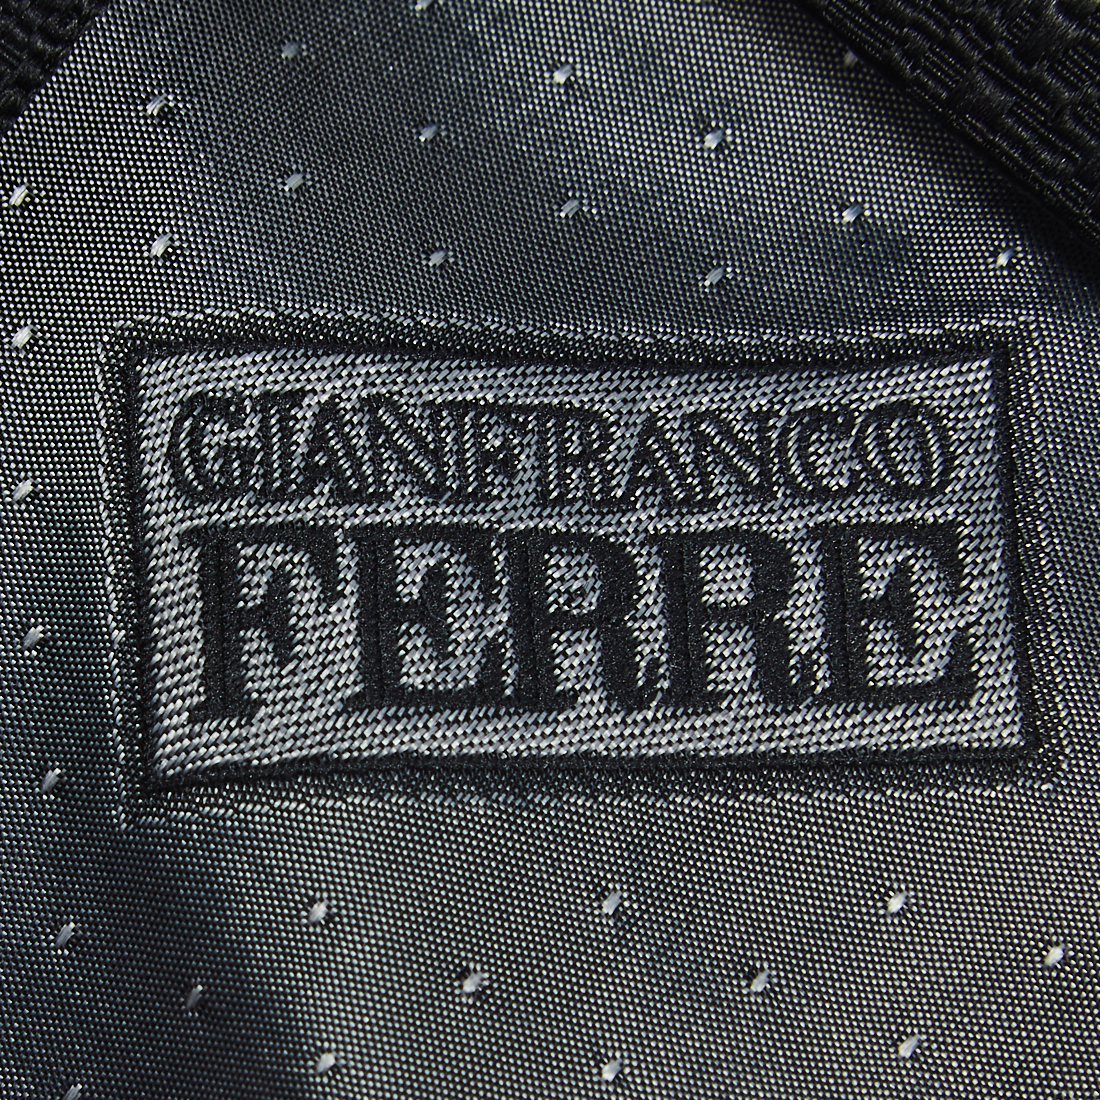 Gianfranco Ferre Black Patterned Silk Tie